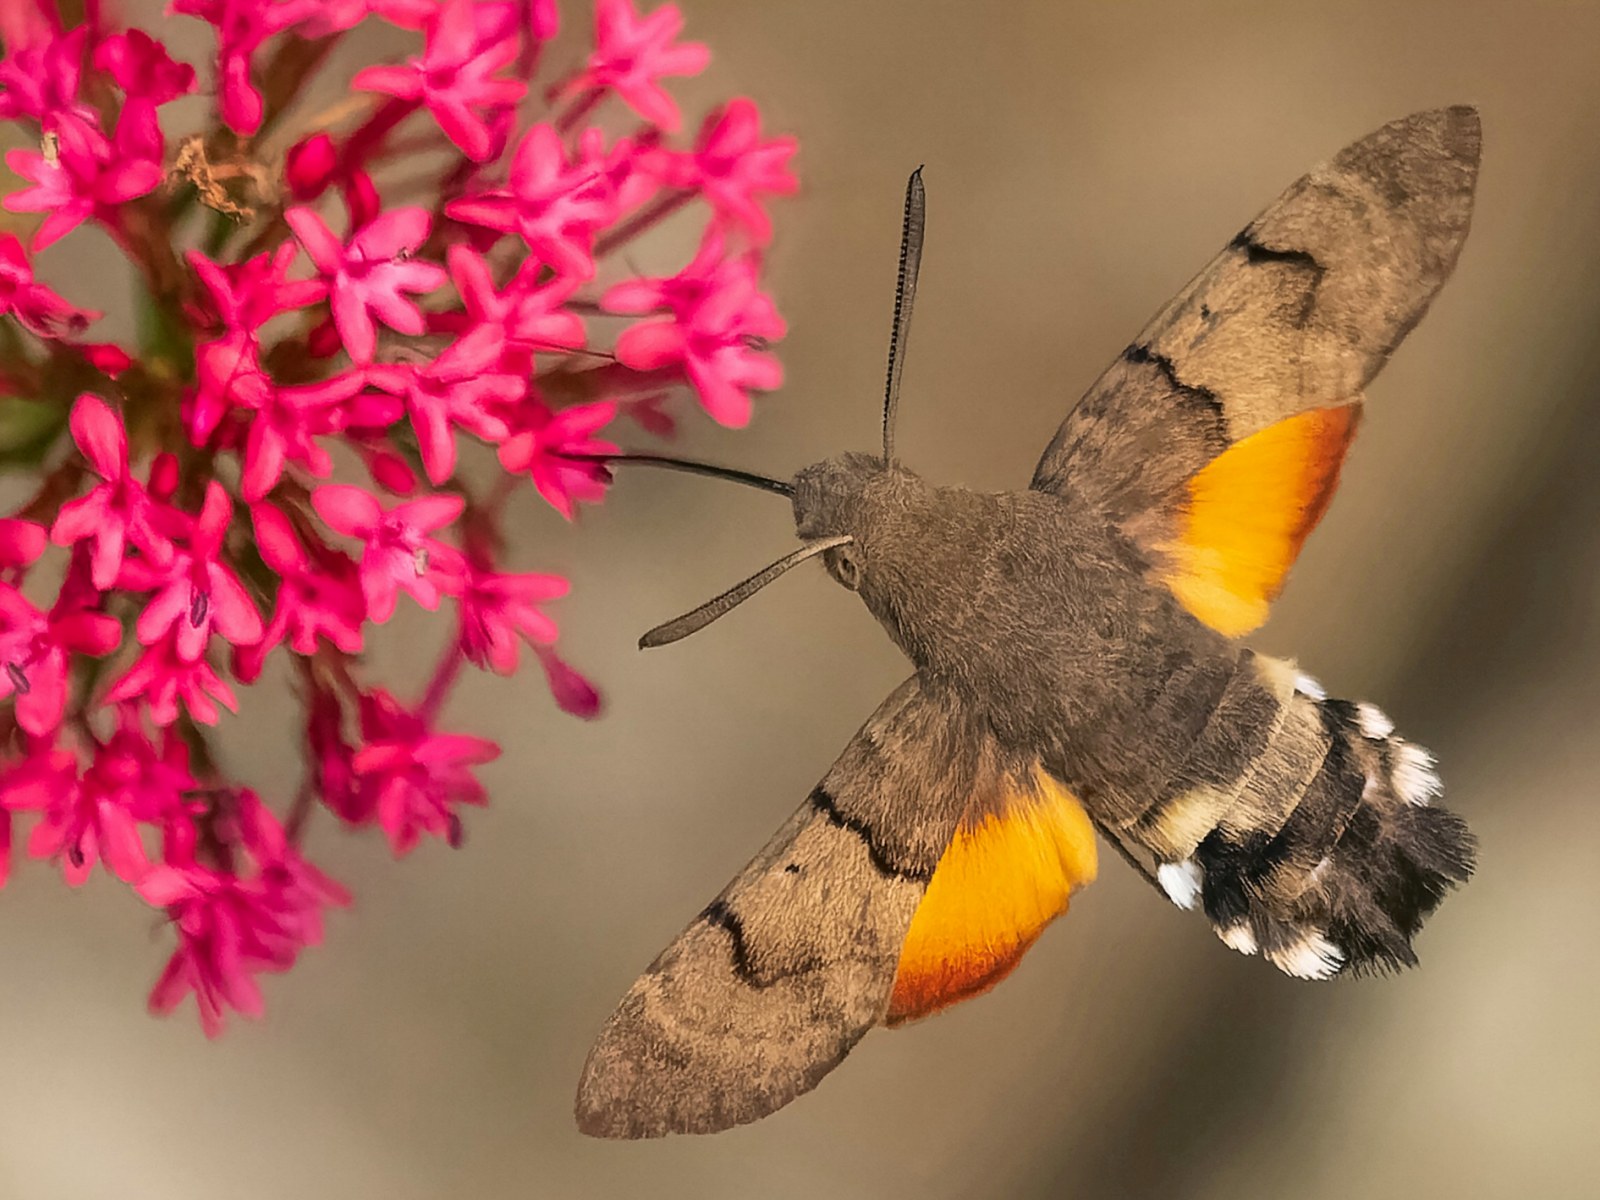 https://d.newsweek.com/en/full/2106835/hummingbird-hawk-moth-caught-camera.jpg?w=1600&h=1200&q=88&f=46d879ef59d68c6ab5b9907228130249